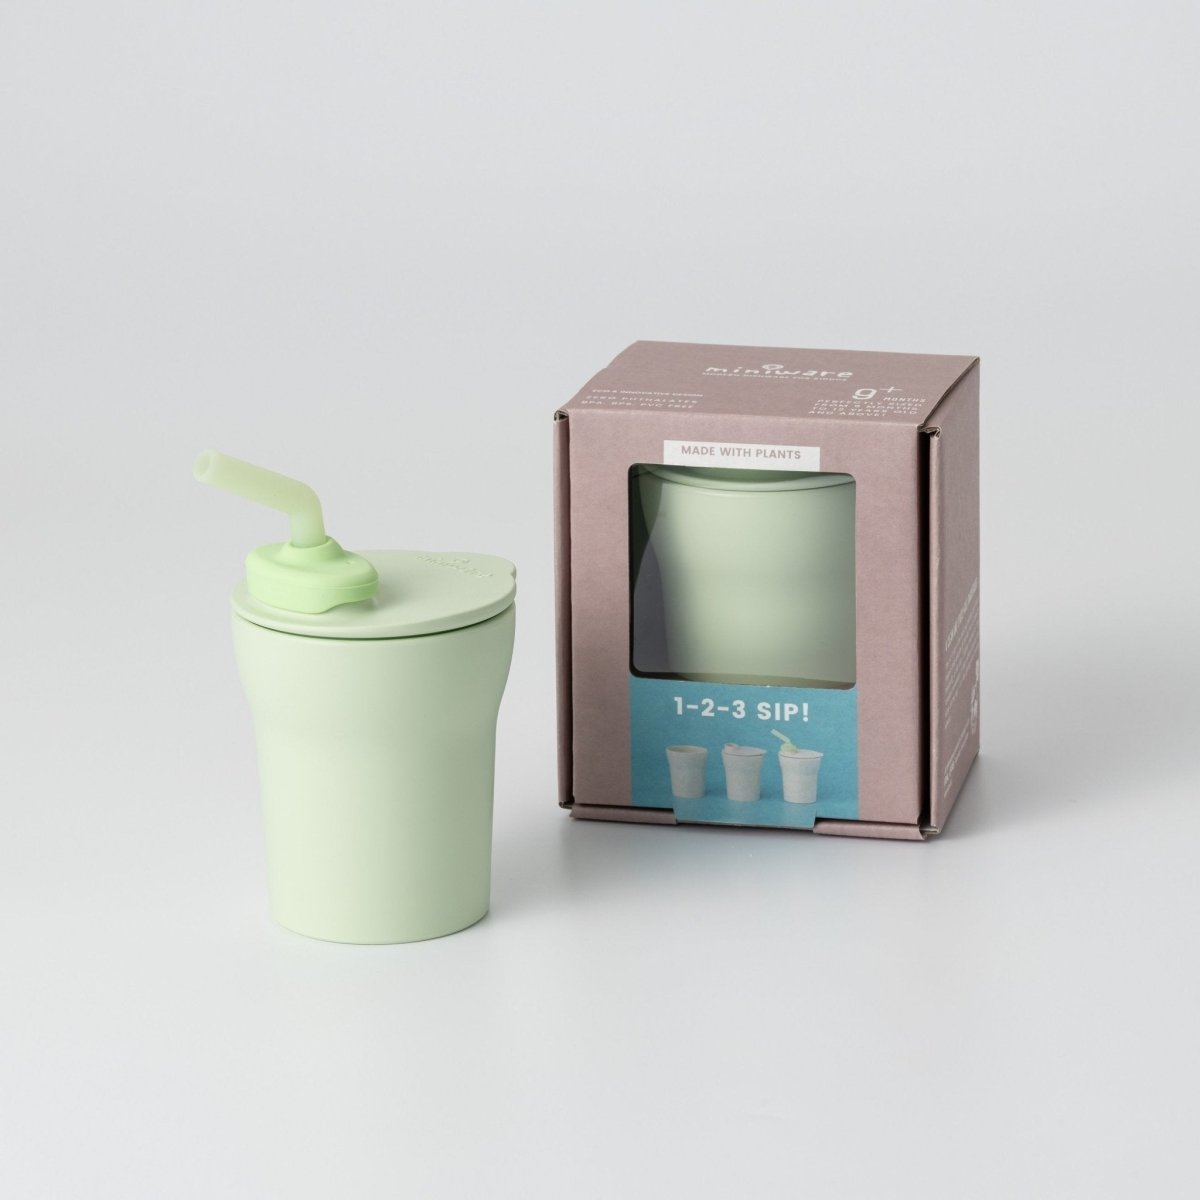 Miniware 1-2-3 Sip! Sippy Cup- Key Lime - MWSCKK